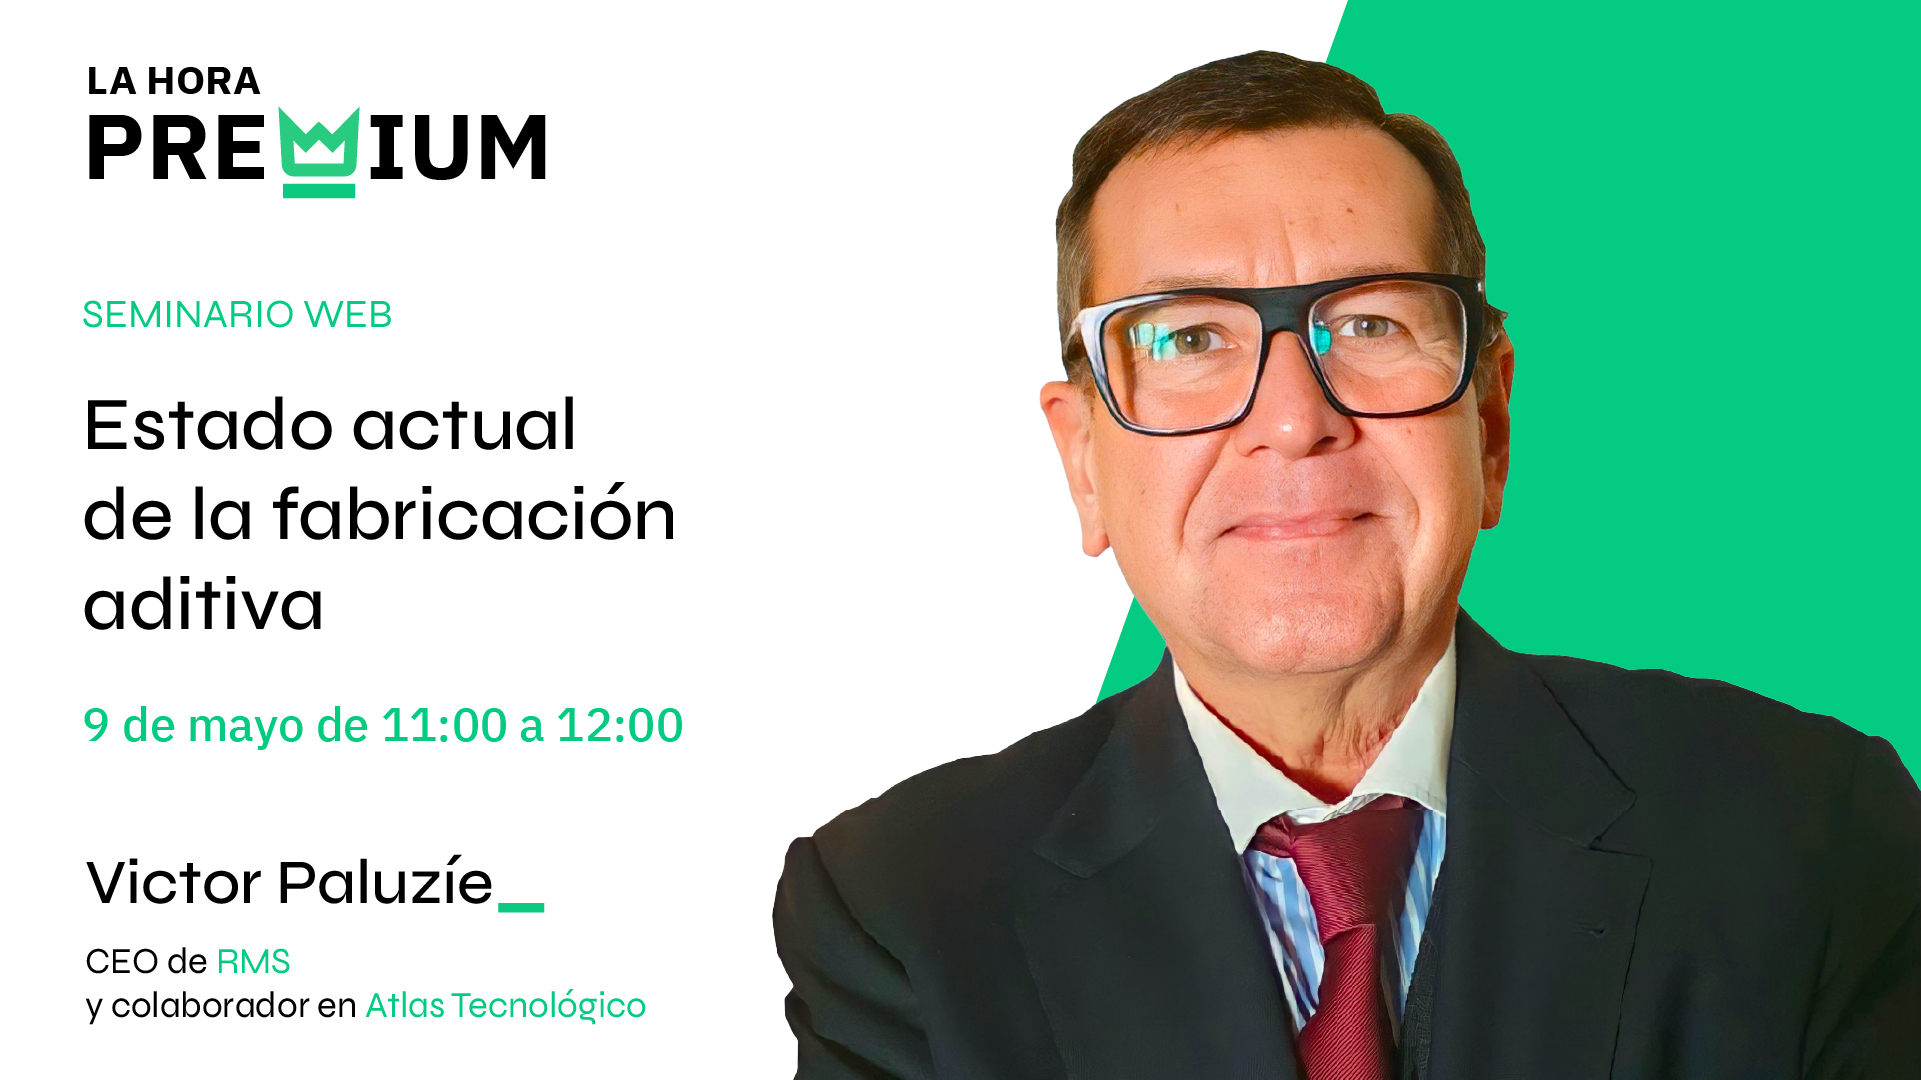 Víctor Paluzíe hablará sobre el estado de la fabricación aditiva en la próxima Hora Premium